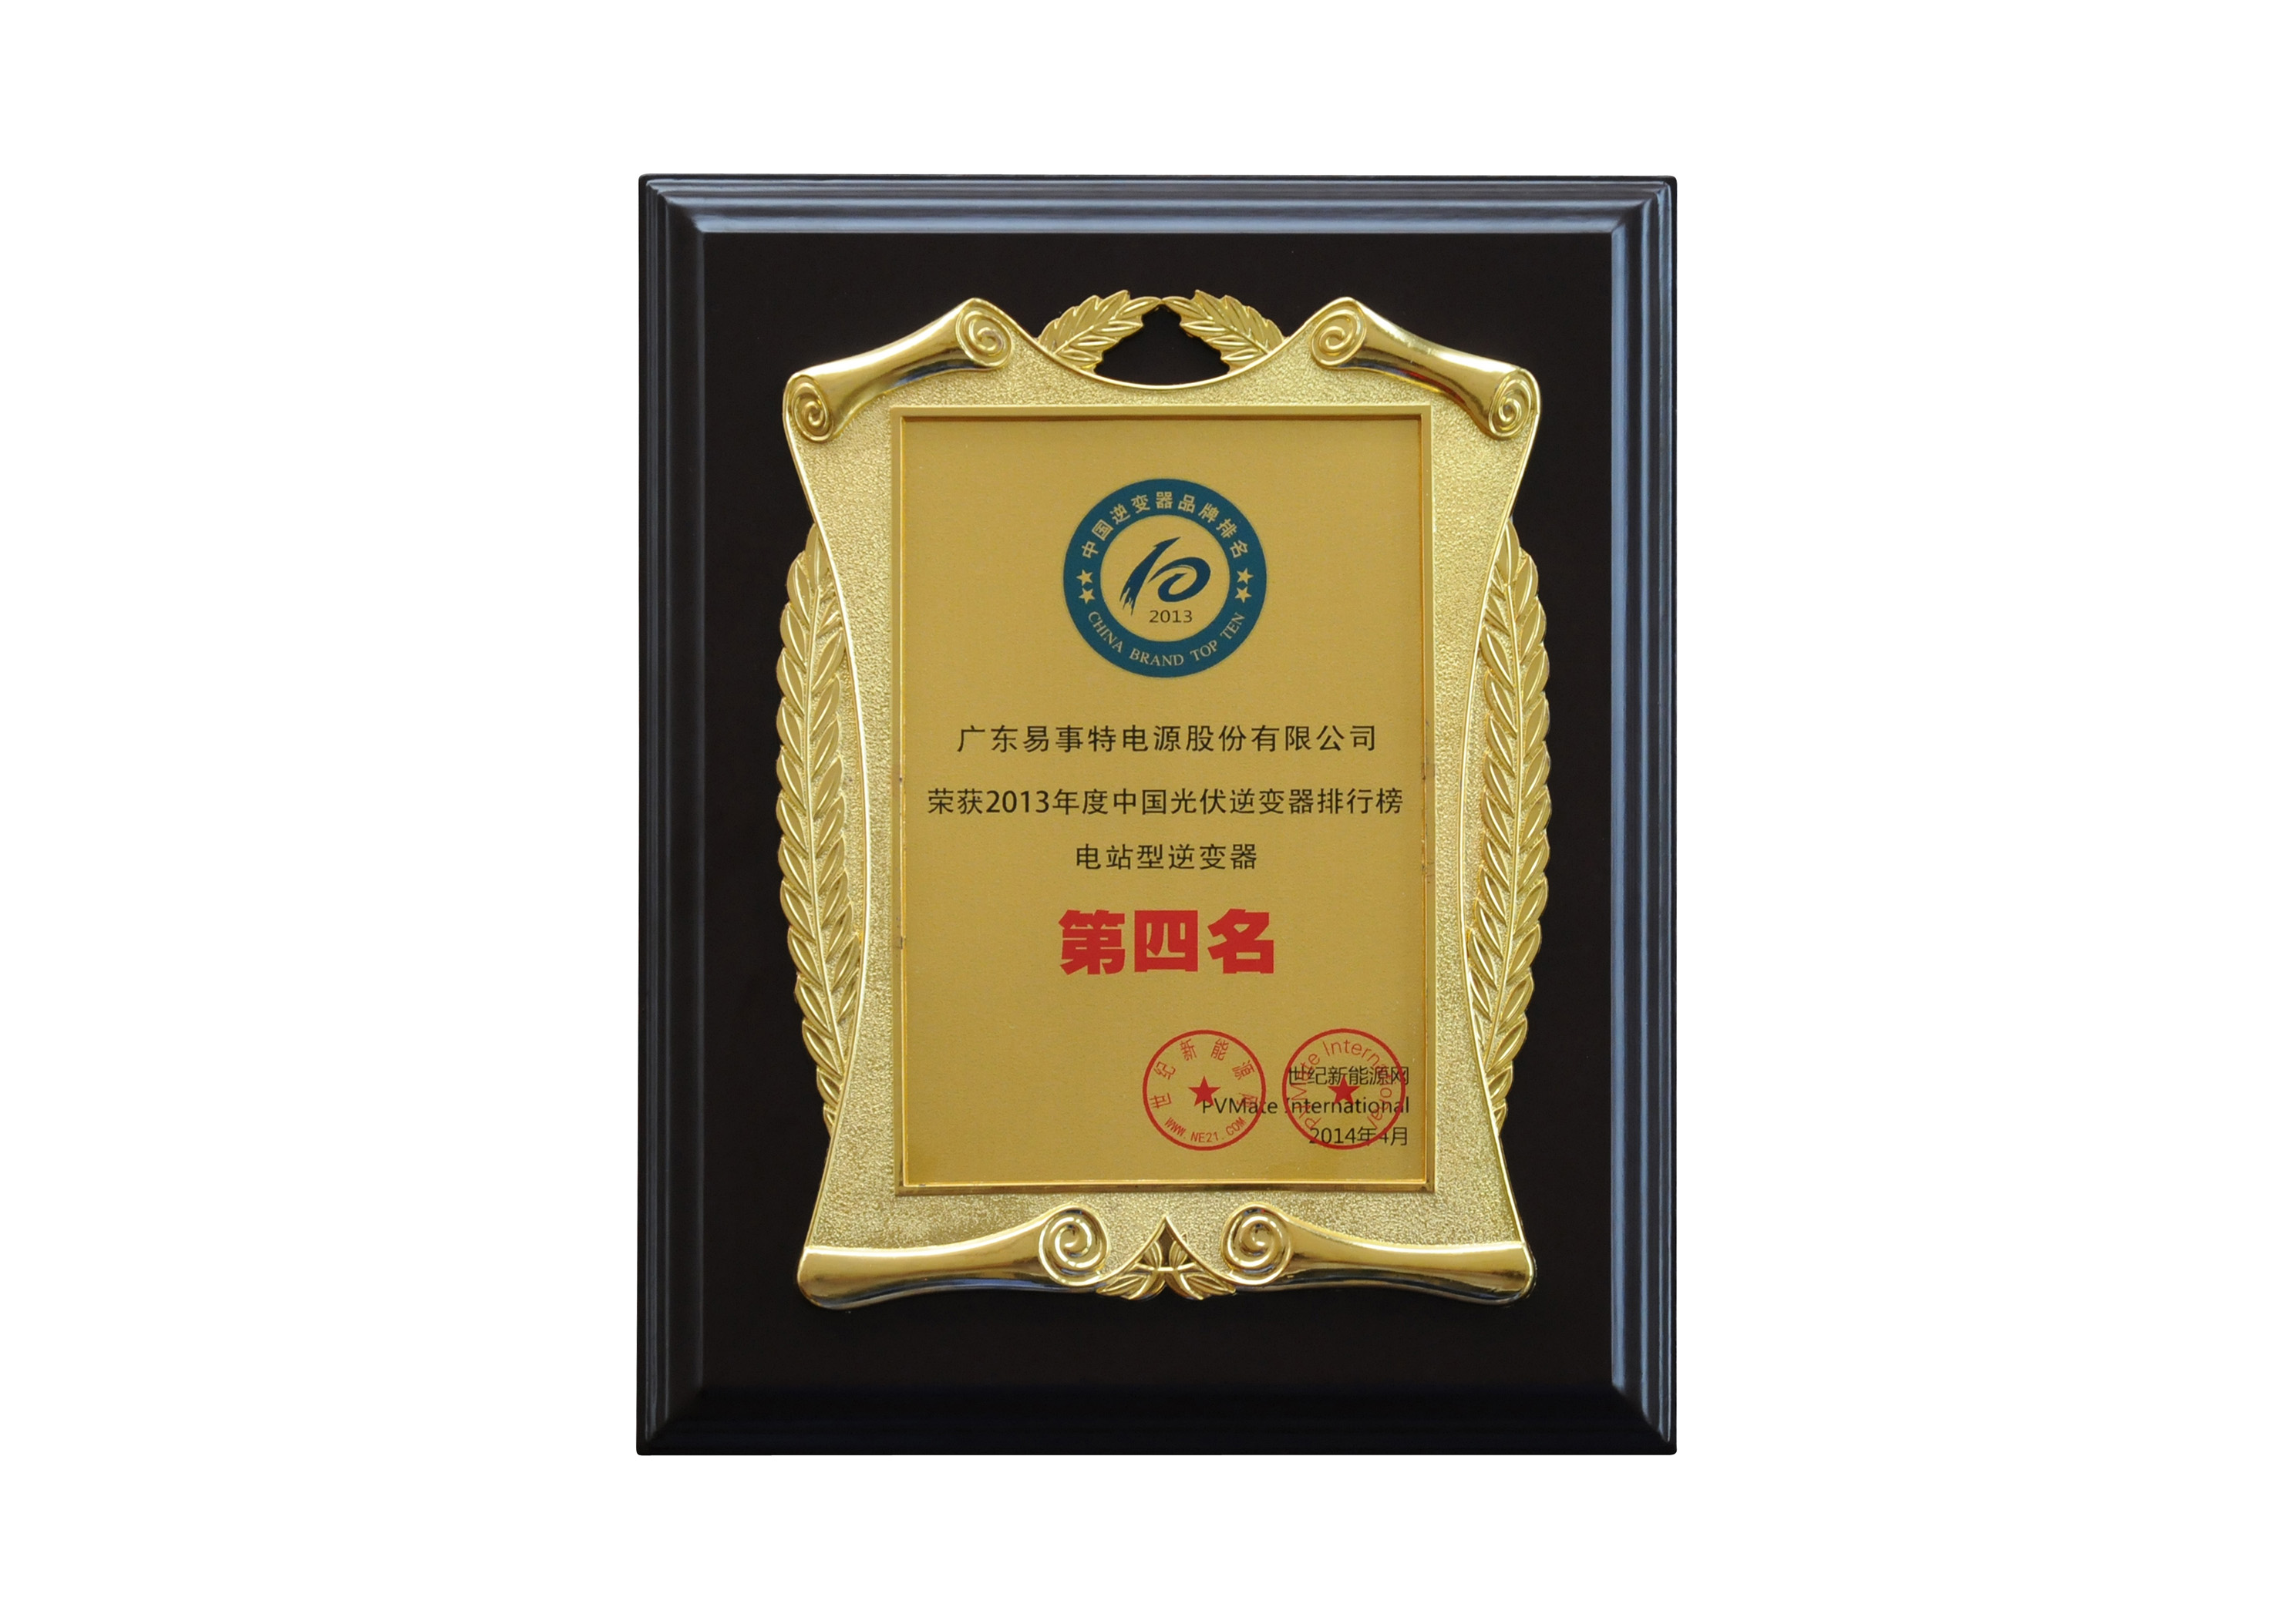 2013年度中国光伏逆变器排行榜电站型逆变器第四名奖牌